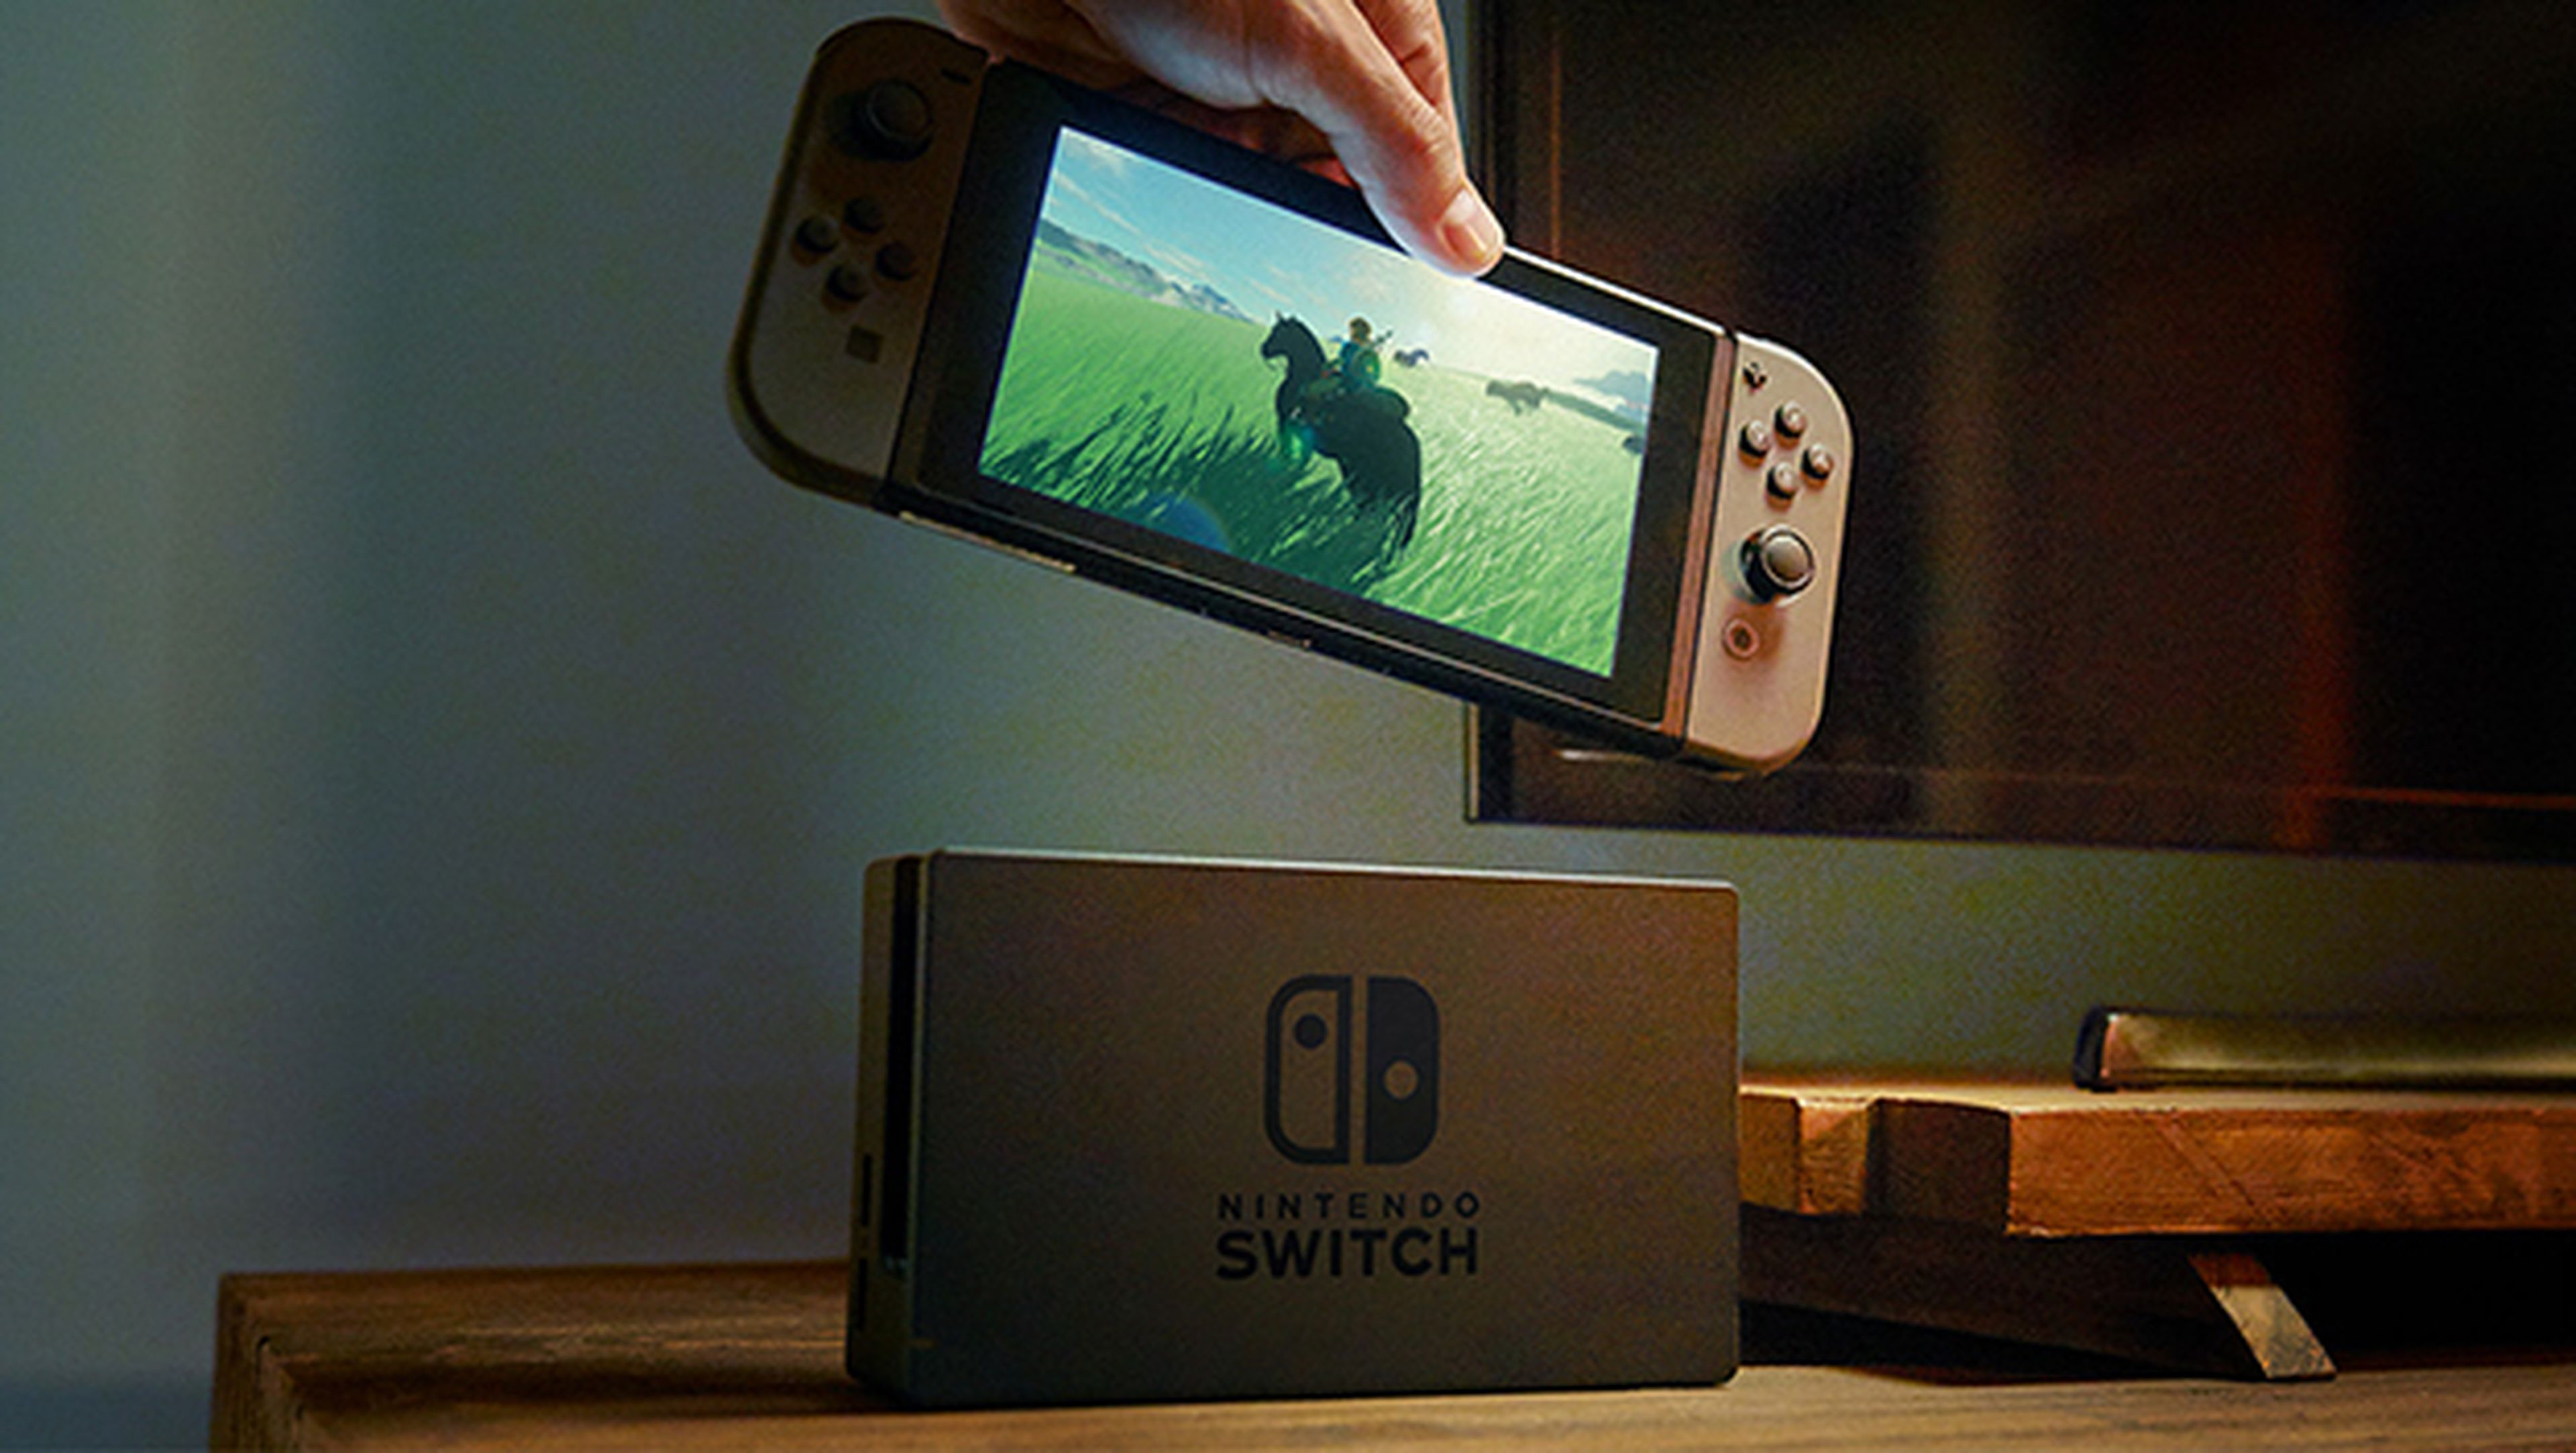 Una patente de Nintendo Switch desvela futuras características